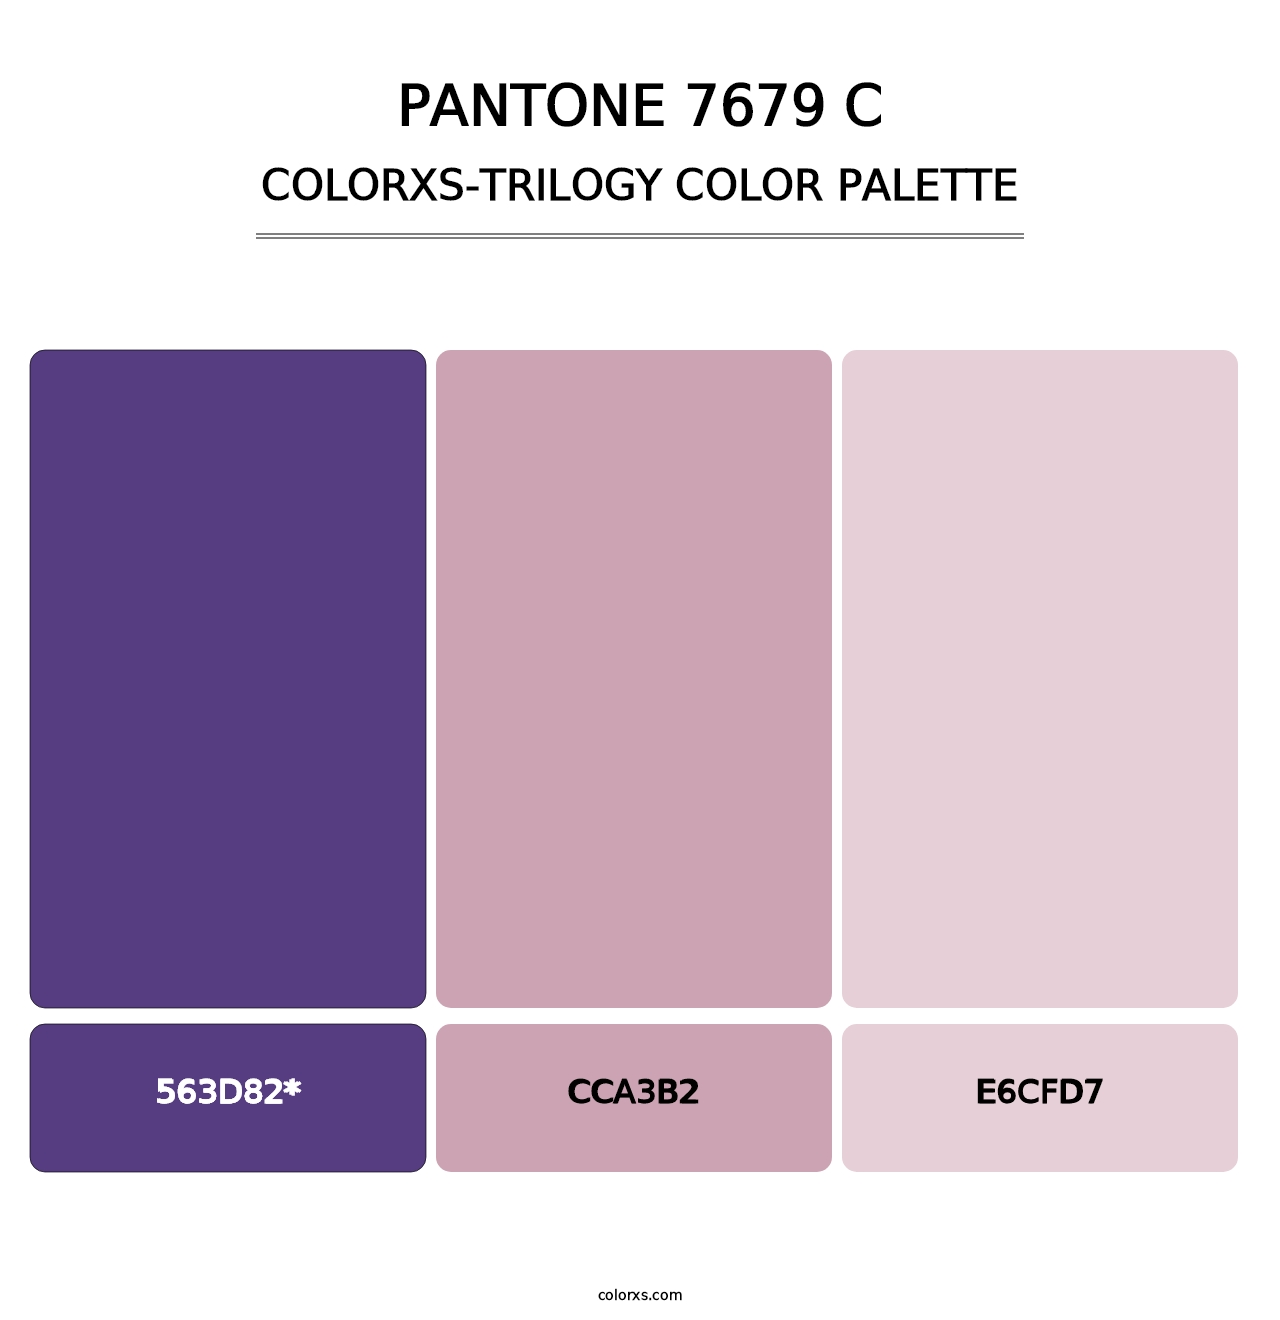 PANTONE 7679 C - Colorxs Trilogy Palette